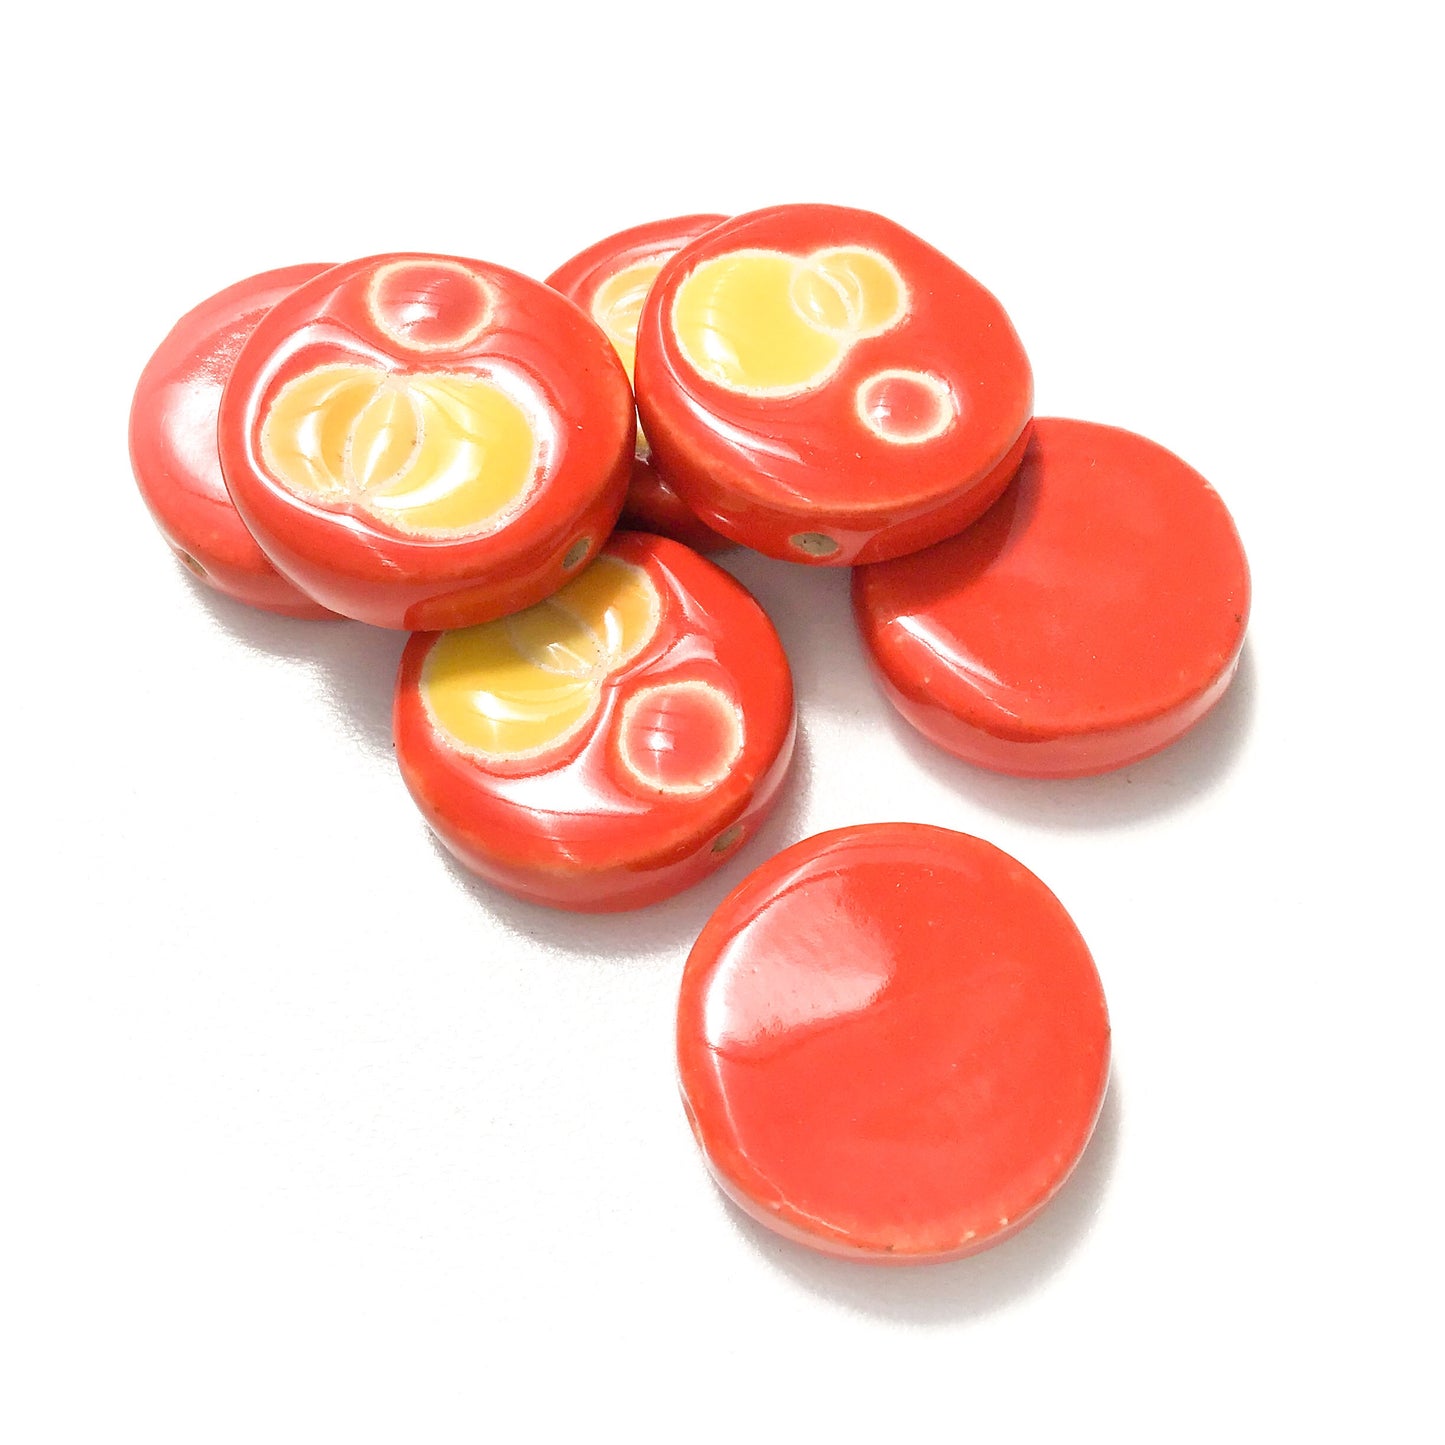 Round Handmade Clay Beads - Reds, Oranges, & Yellow Ceramic Beads - 7/8" x 1/4"